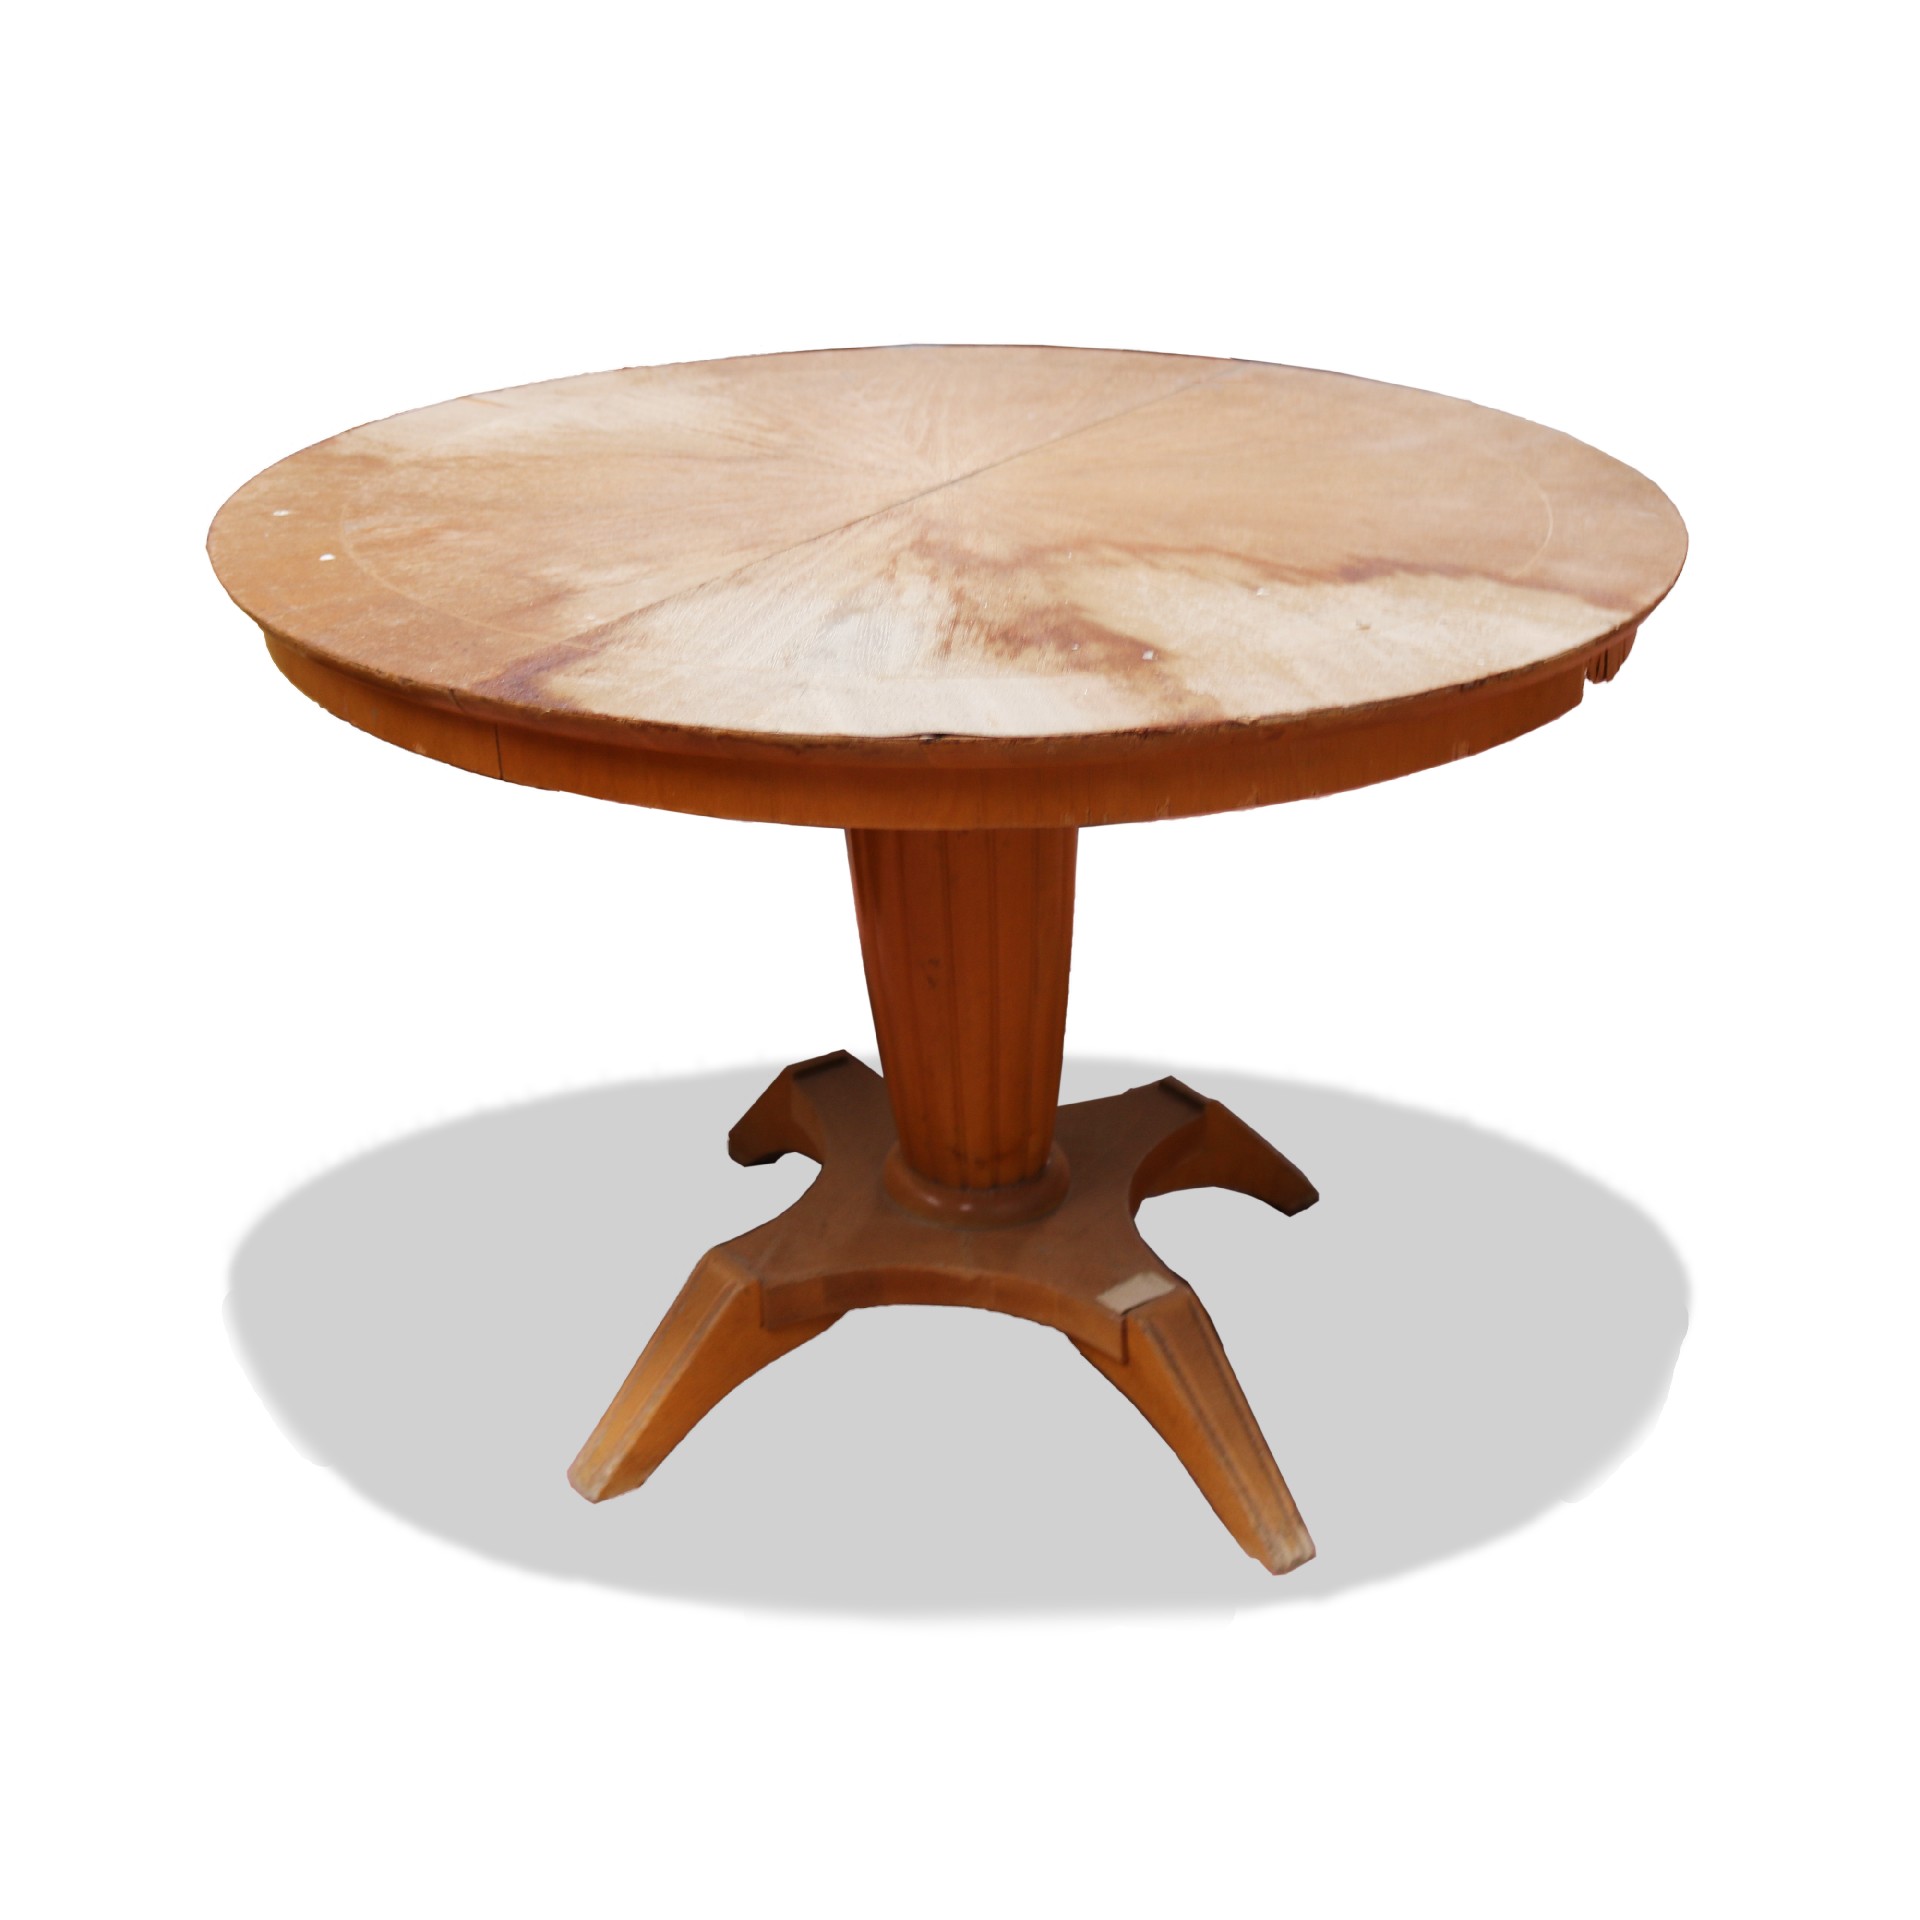 Tavolo antico in legno. - Tavoli in legno - Tavoli e complementi - Prodotti - Antichità Fiorillo